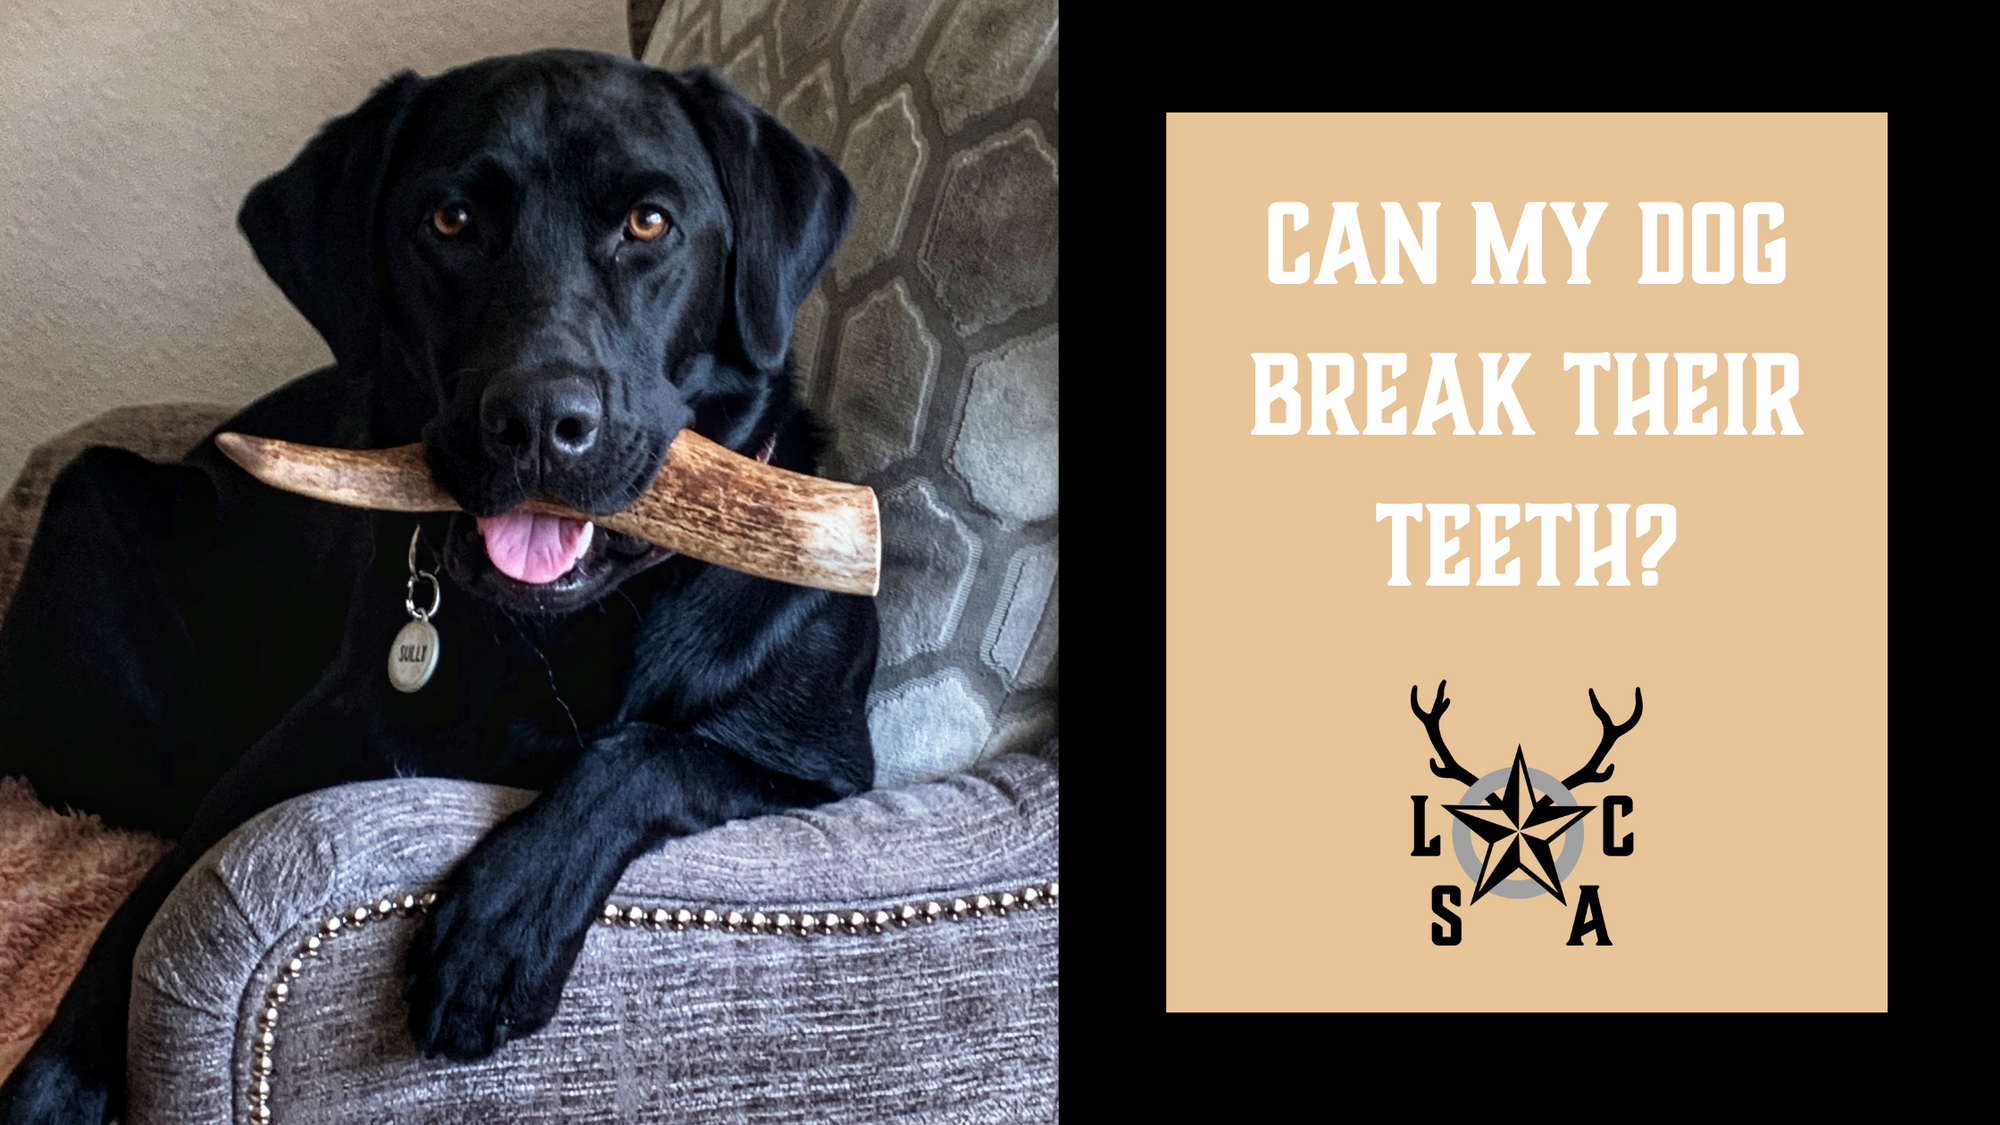 Can My Dog Break Their Teeth?